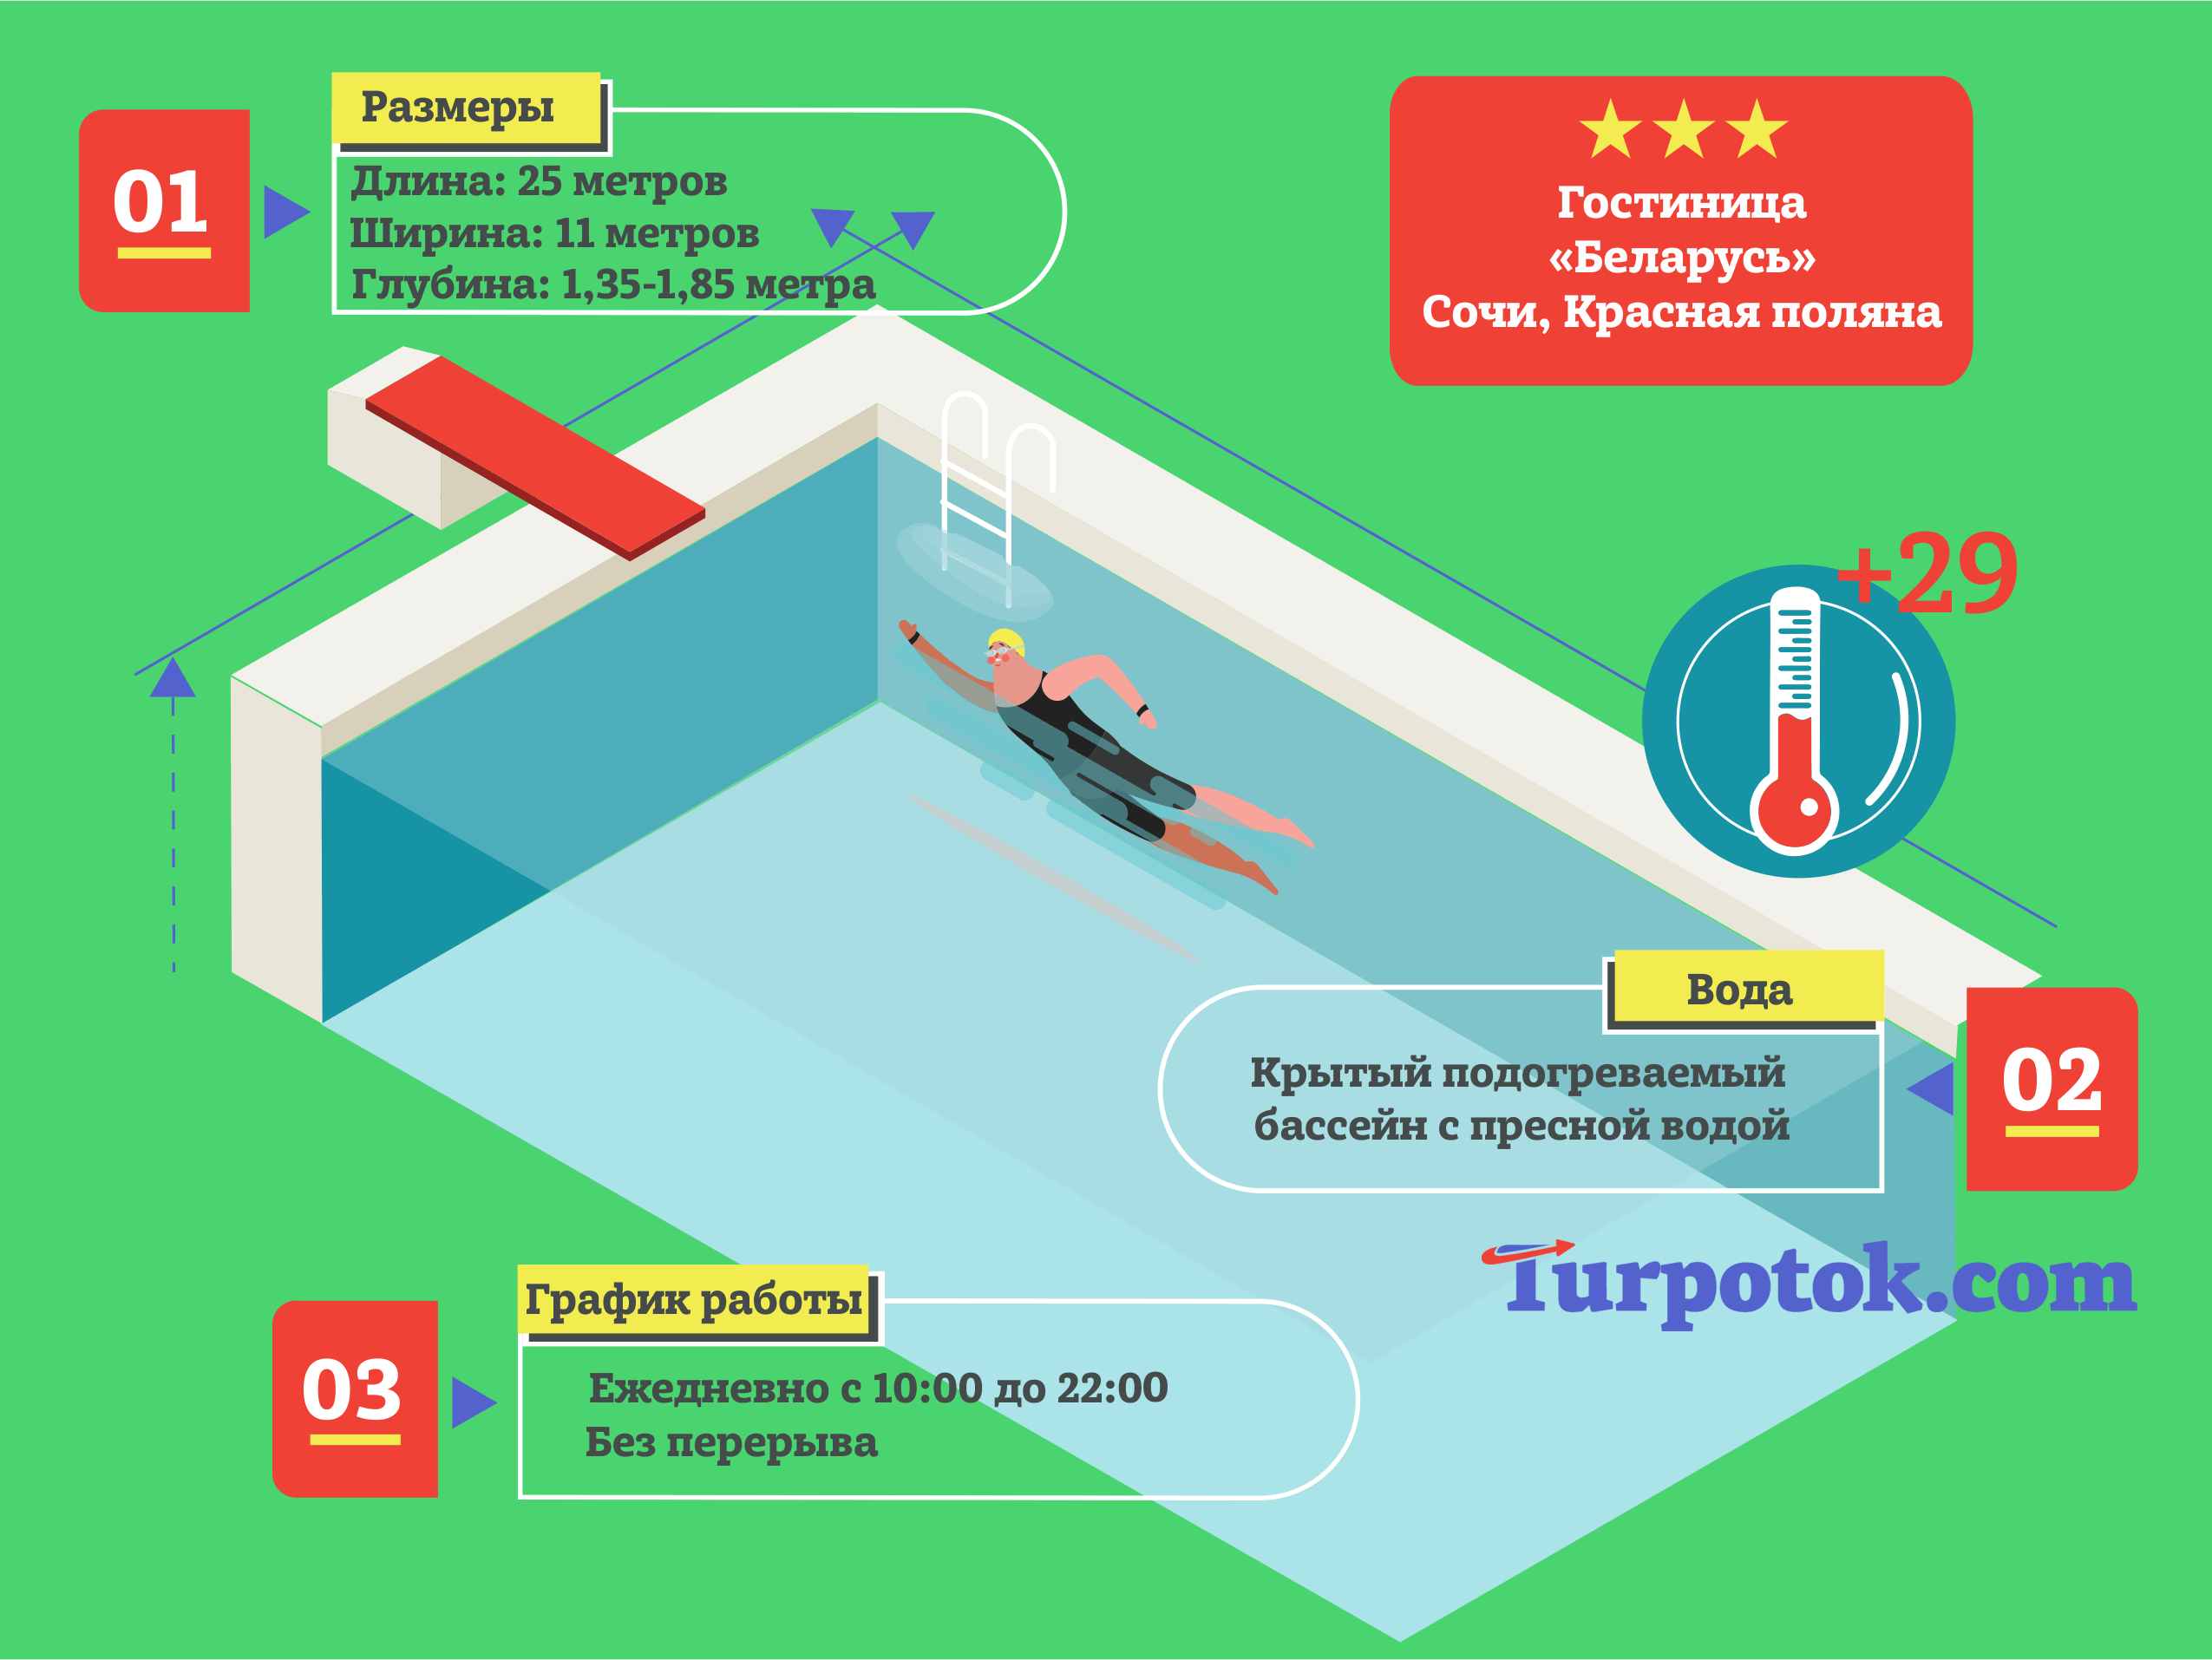 Инфографика про бассейн при гостинице 